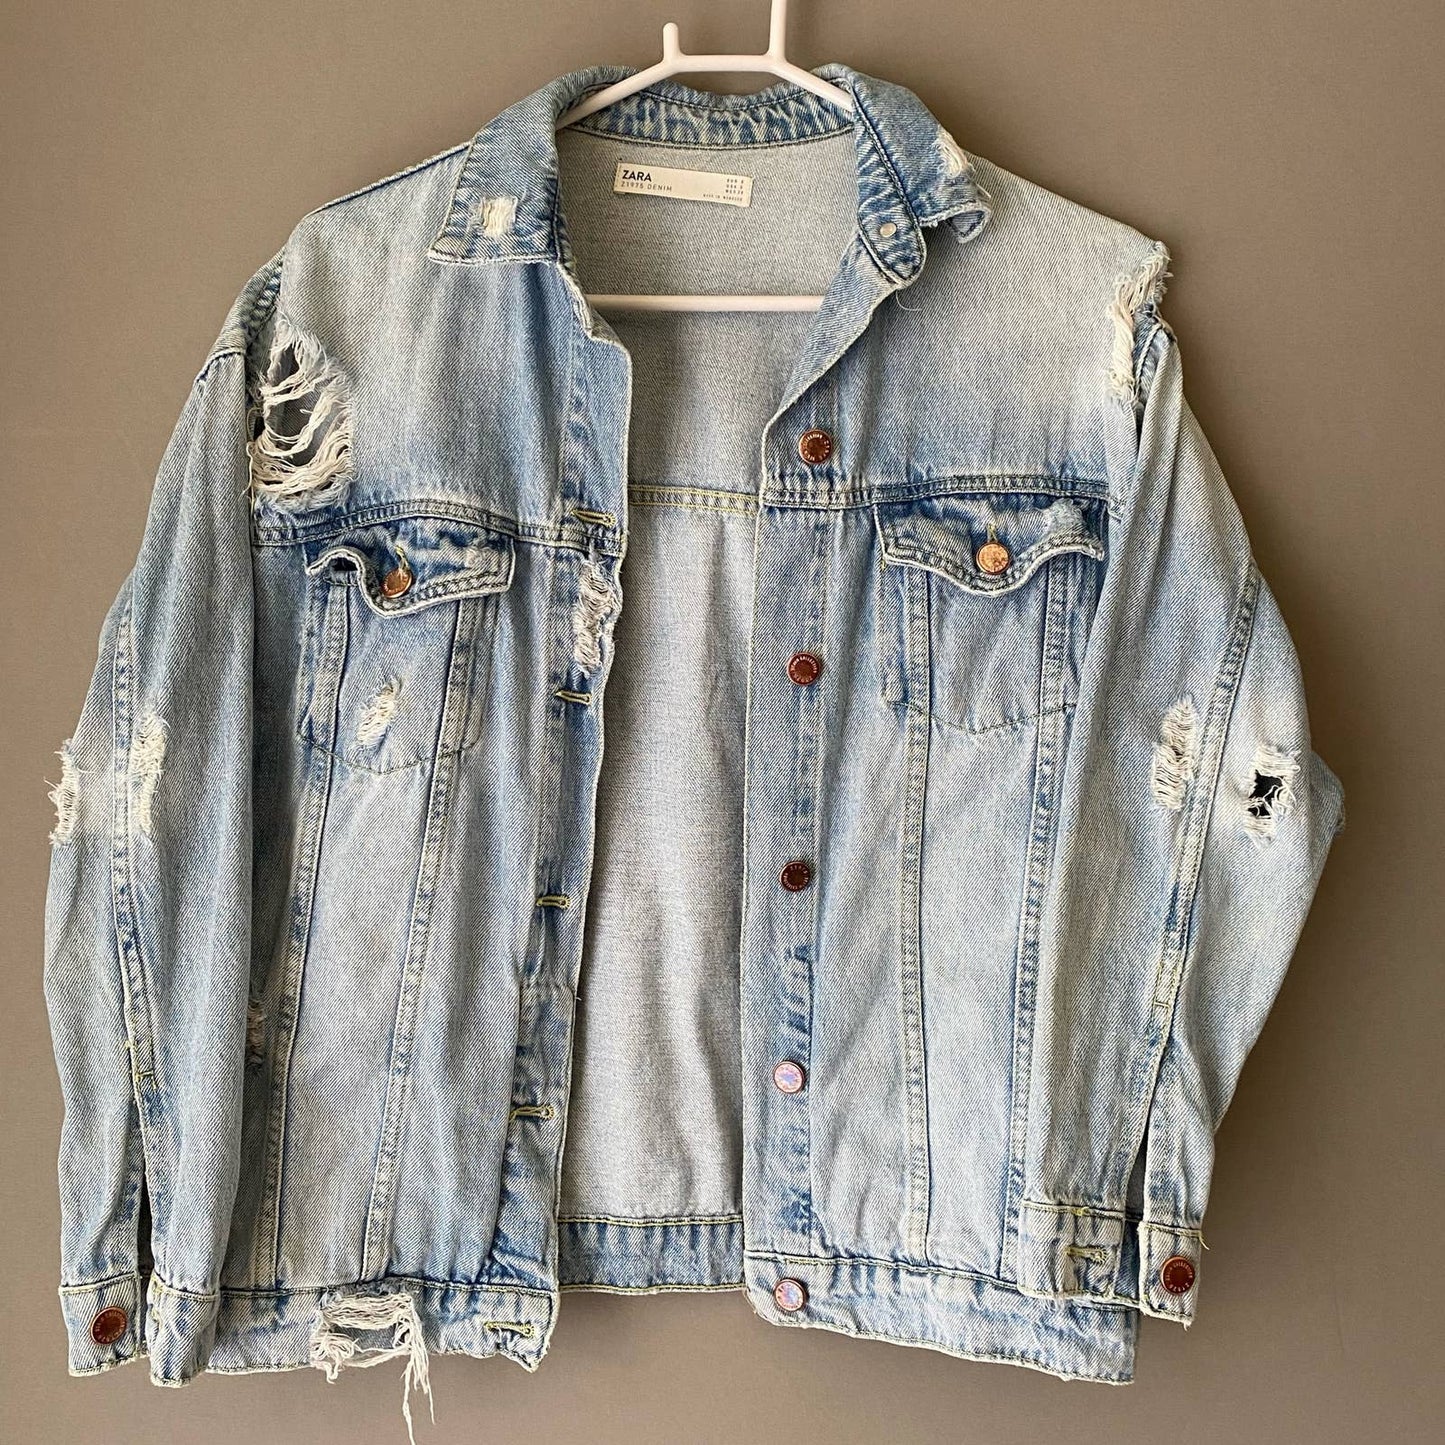 Zara sz S distressed oversized jean jacket